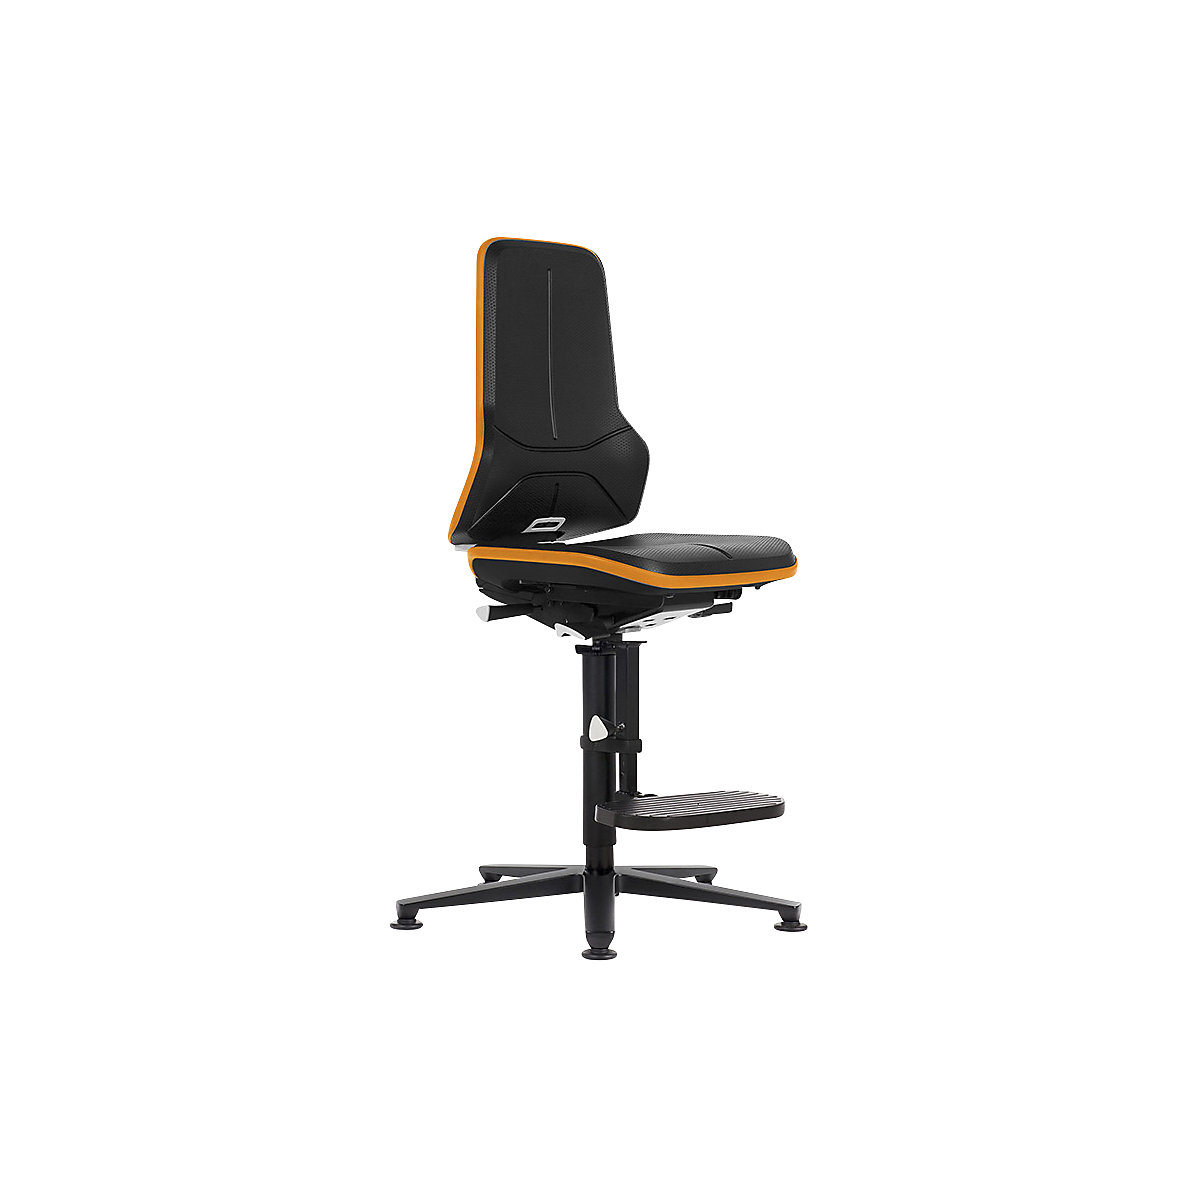 Pracovná otočná stolička NEON, s výstupnou pomôckou – bimos, materiál sedadla integrálna pena, ESD, flexibilná páska oranžová